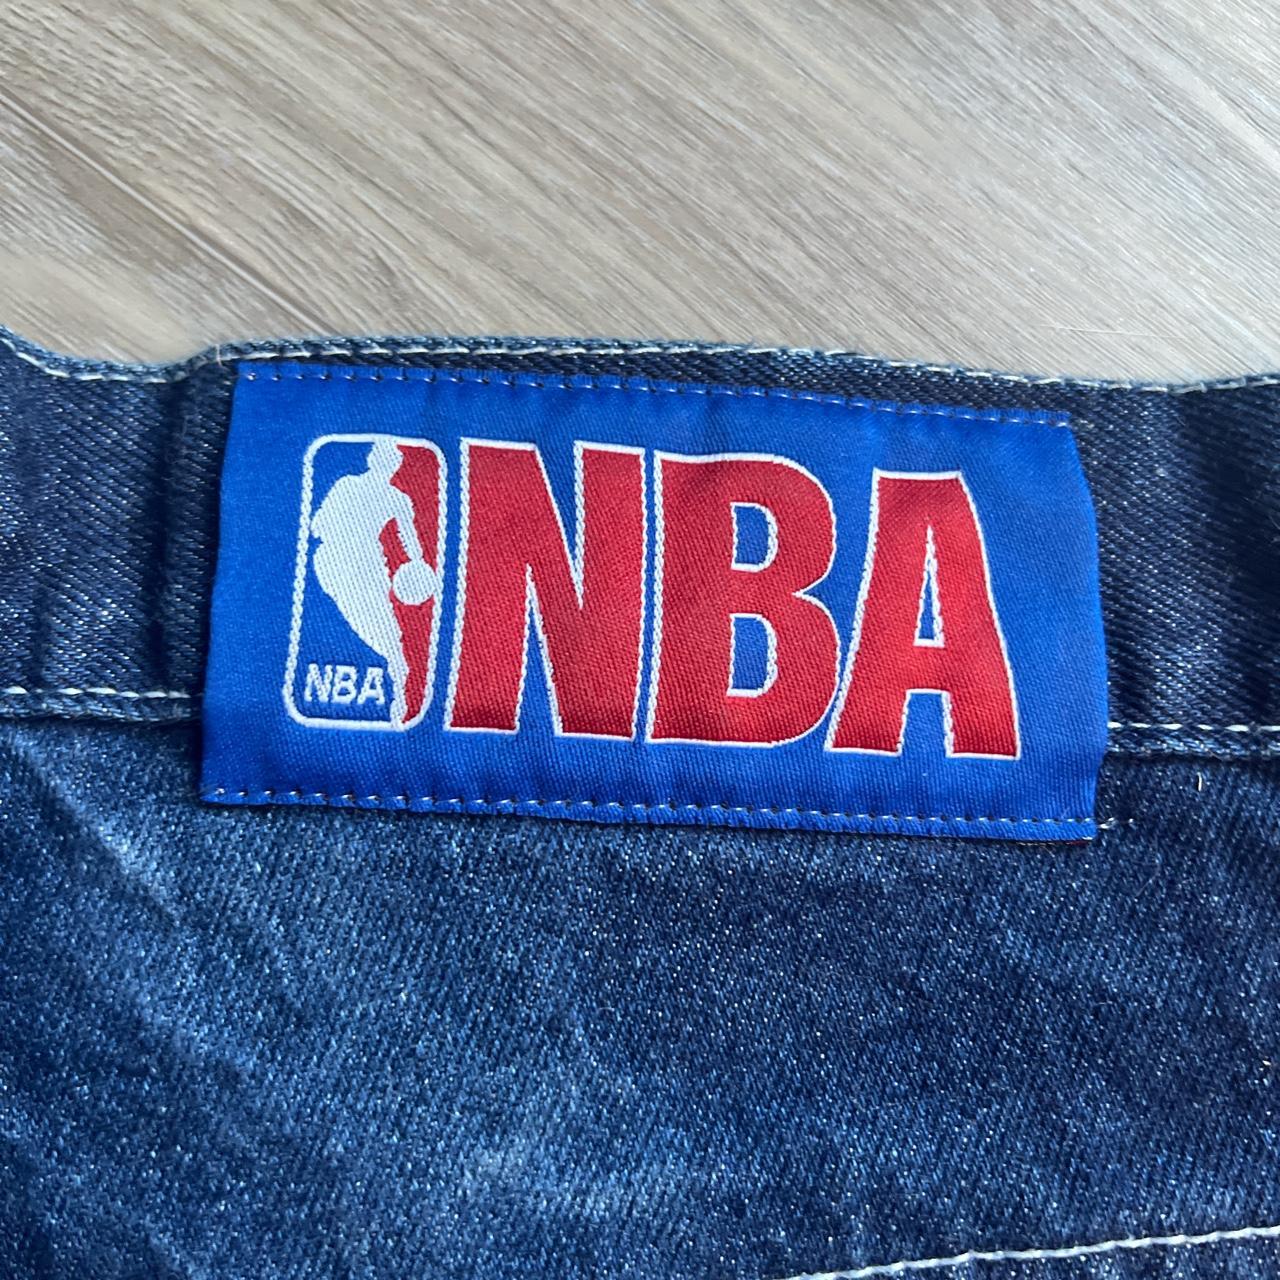 VINTAGE UNK NBA Team Patch Logo Jeans Mens Sz 36x33 Baggy Fit Embroidered  Denim $90.00 - PicClick